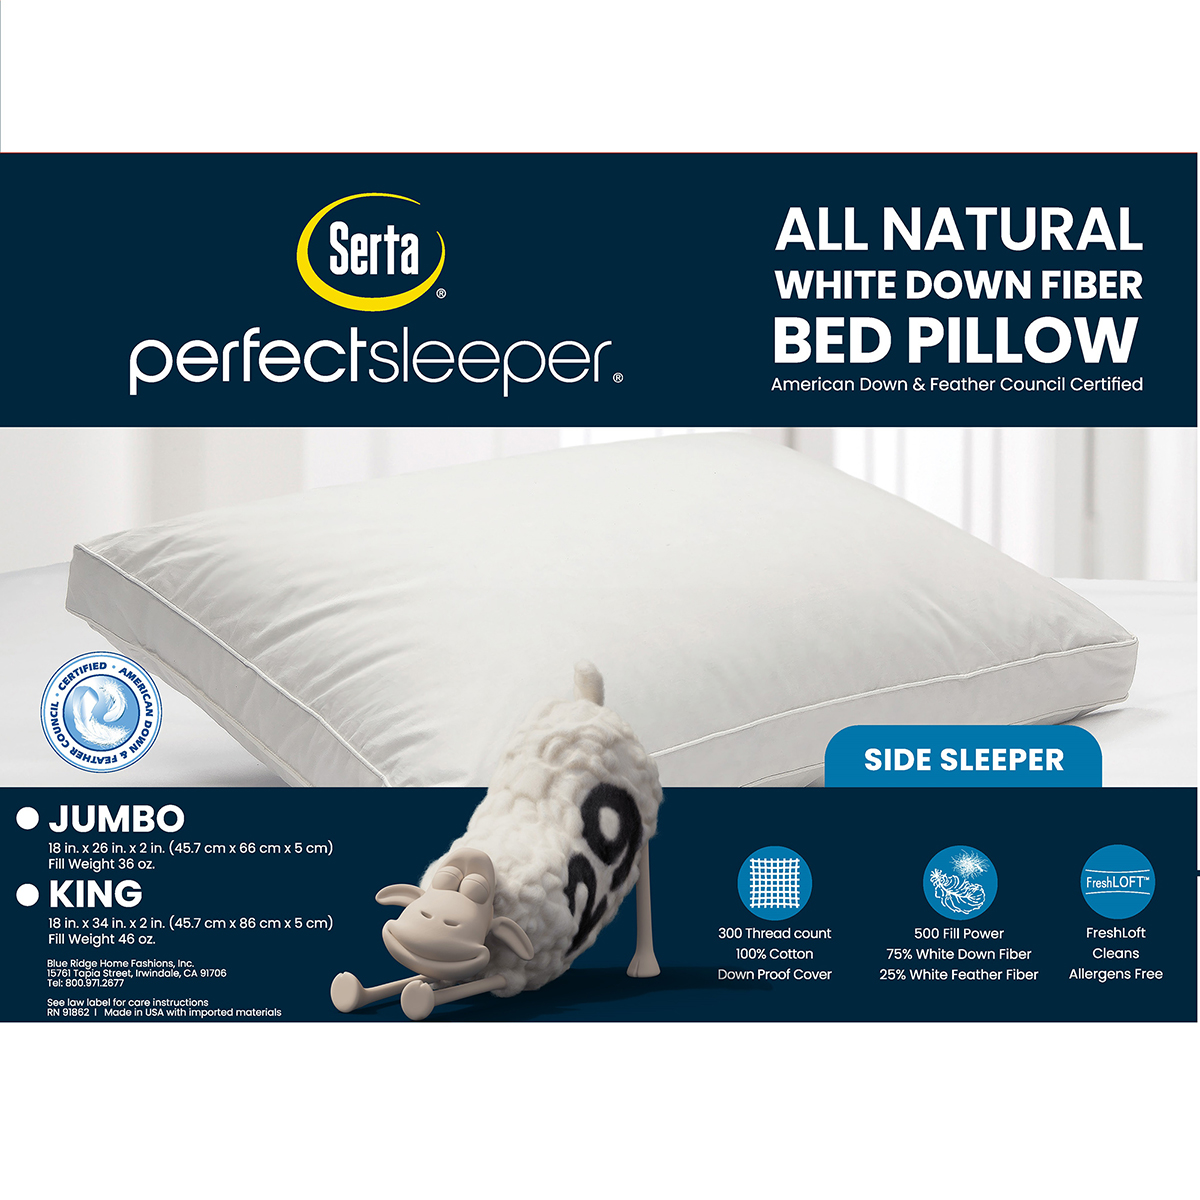 Serta(R) 300 TC White Down Fiber Side Sleeper Bed Pillow - Jumbo